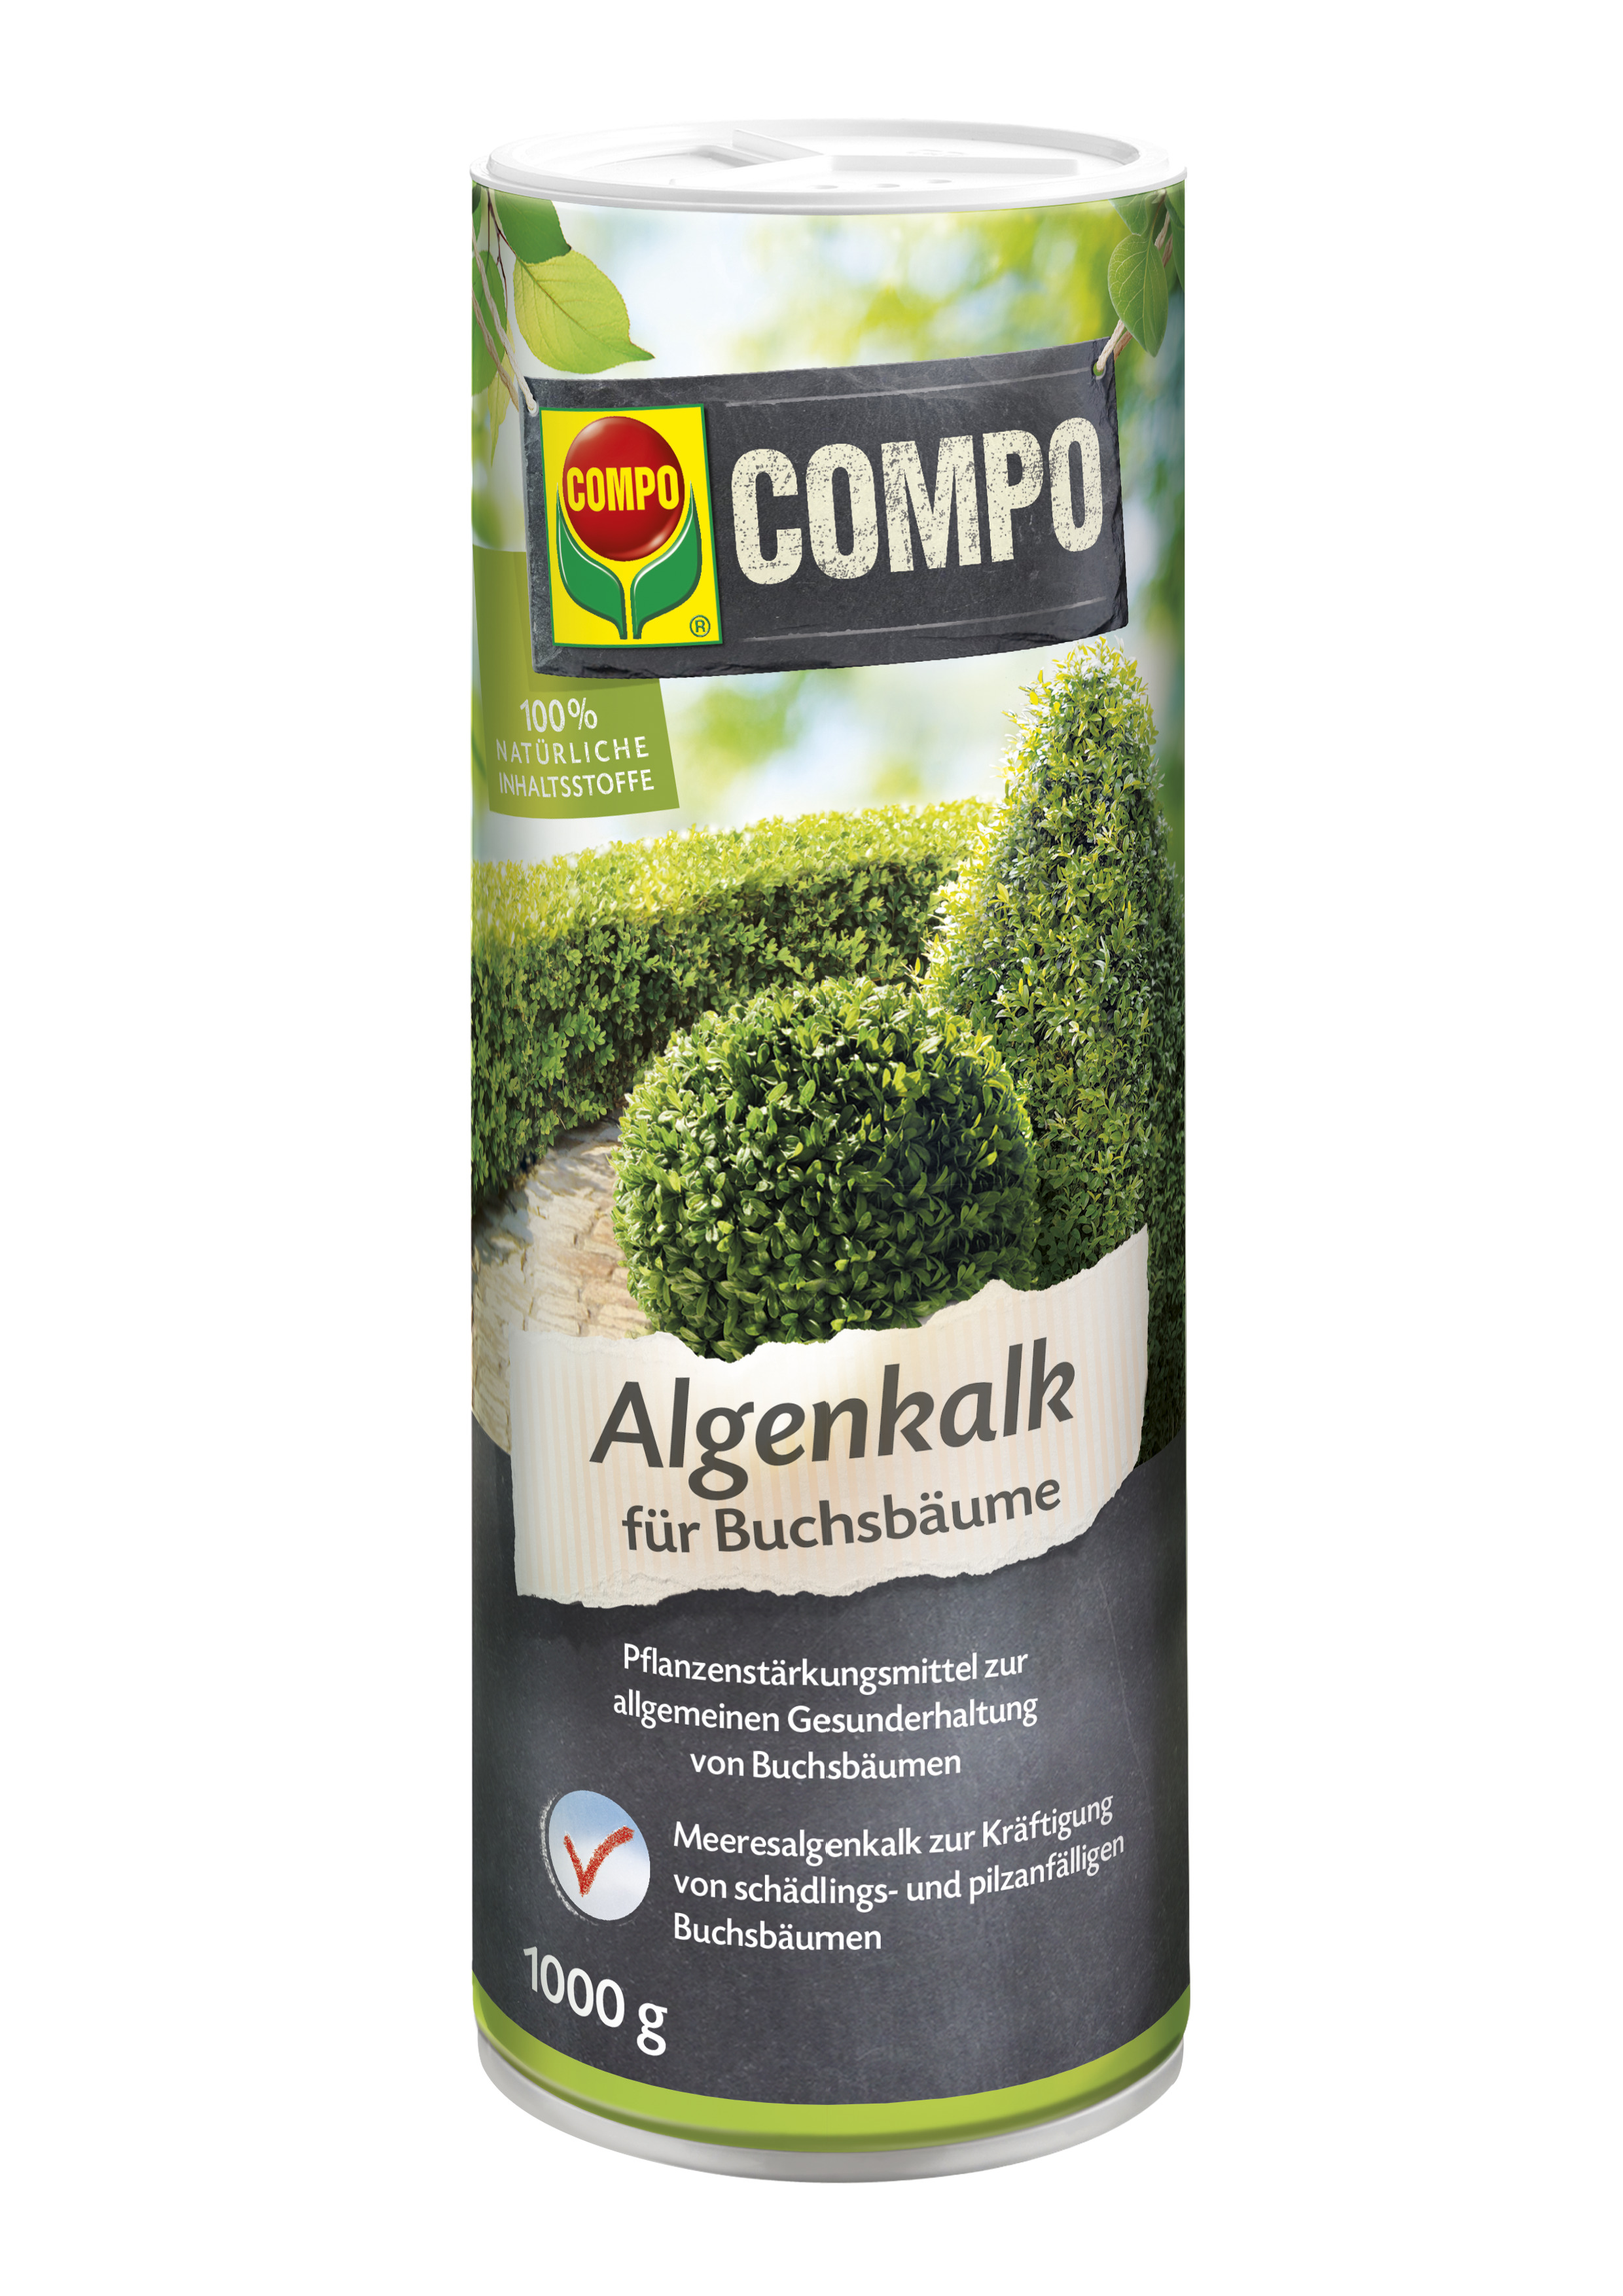 Compo Algenkalk für Buchsbäume, 1 kg